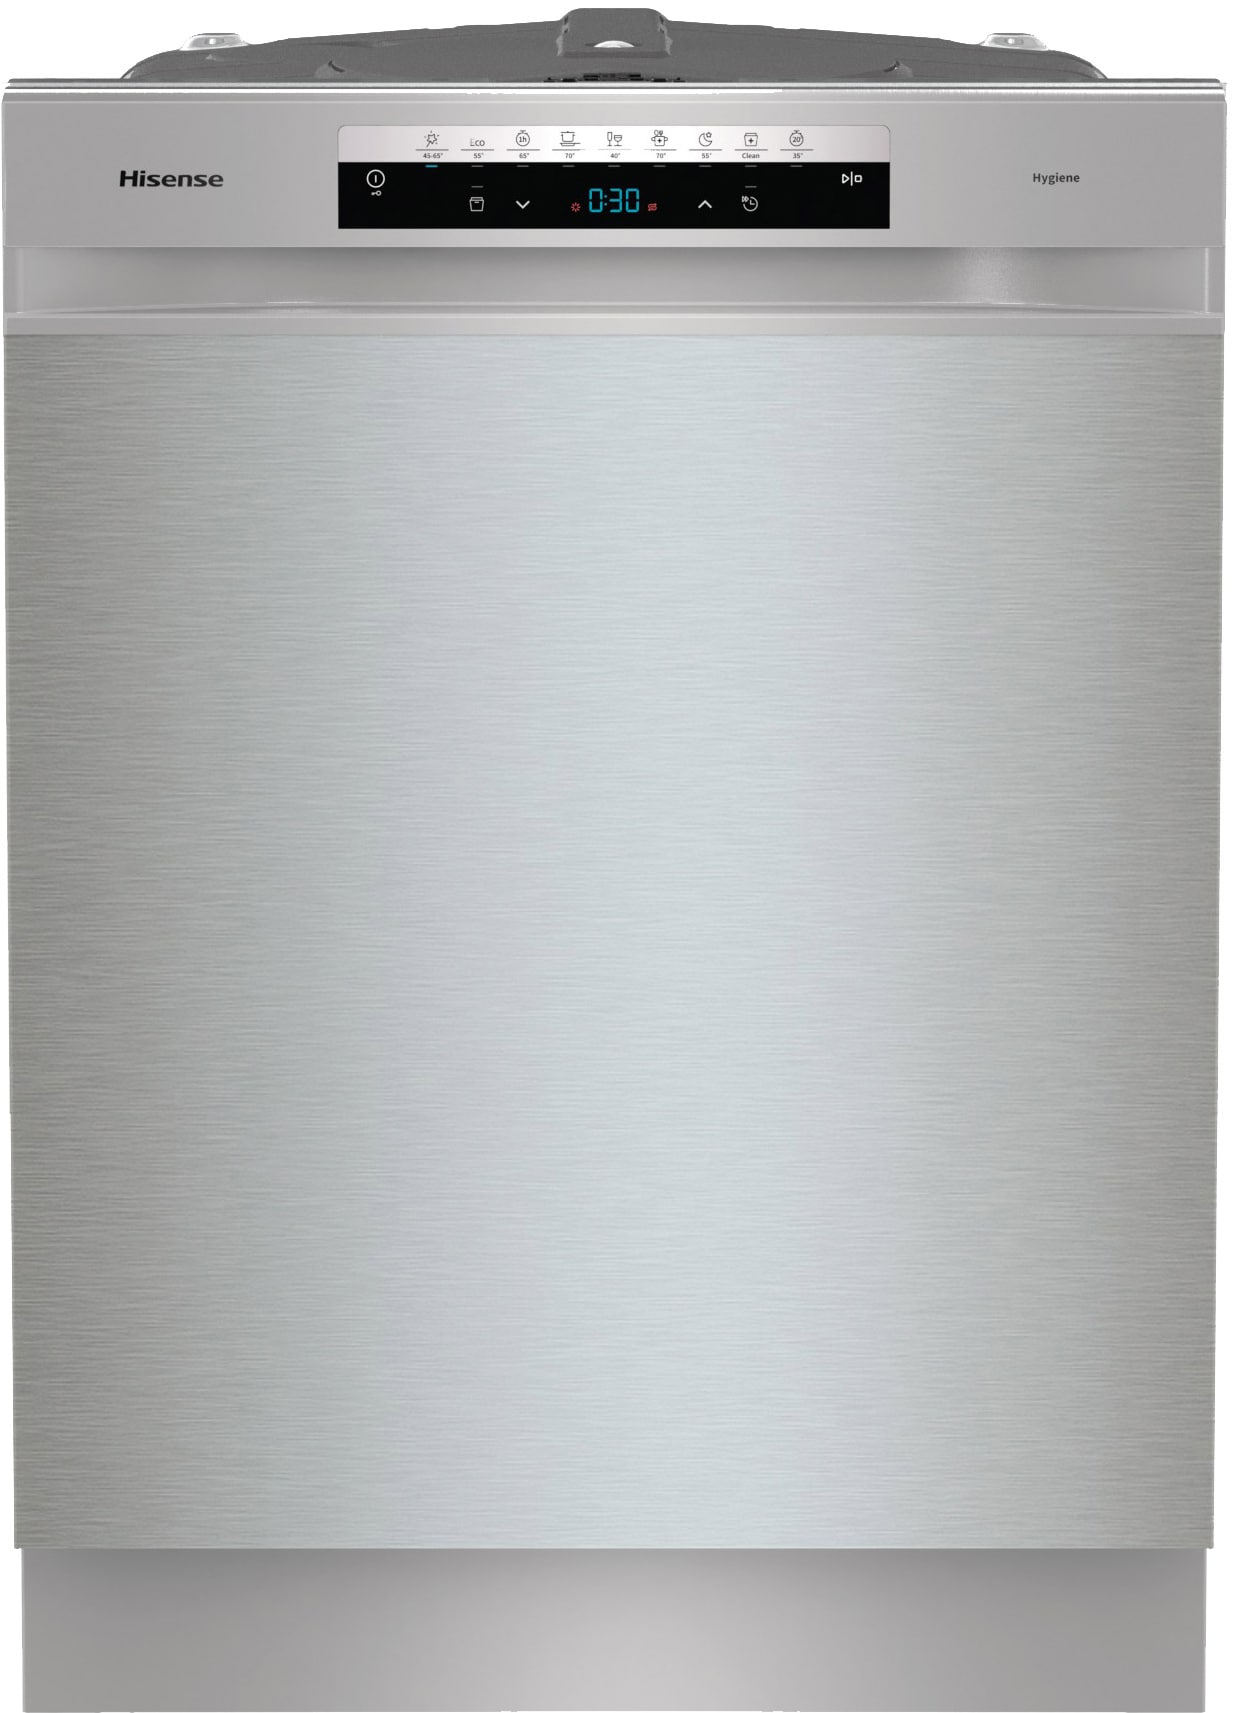 Hisense opvaskemaskine HU663C60X | Elgiganten